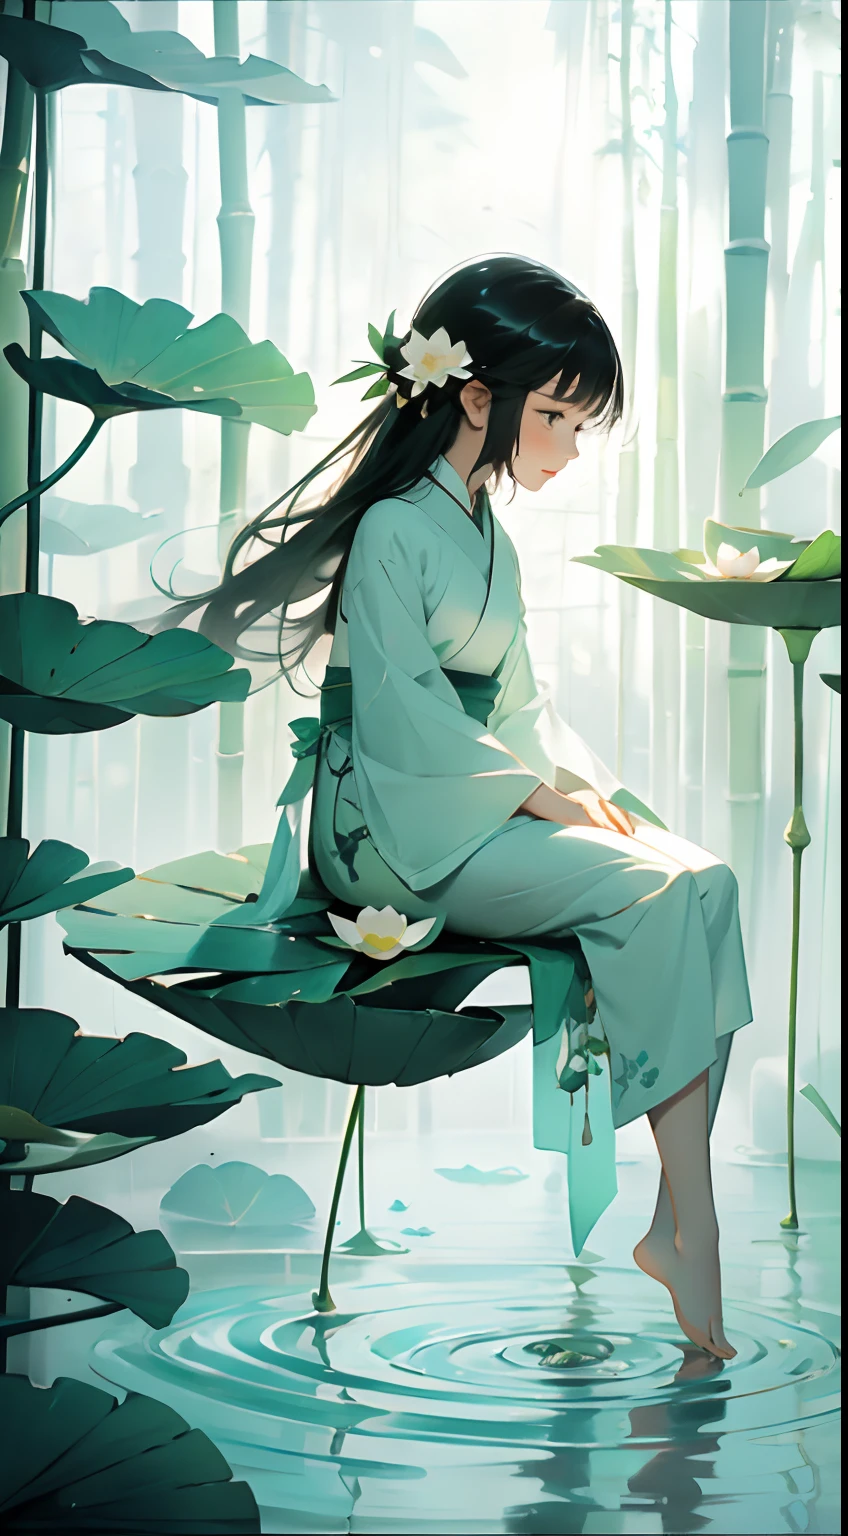 Eine Schote voller Lotusblumen, ein glückliches Sitzen auf den Lotusblättern der Schote, riesige Lotusblätter, barfuß, Gekleidet in weiß und grün Hanfu, Licht und Schatten, ein Meisterstück